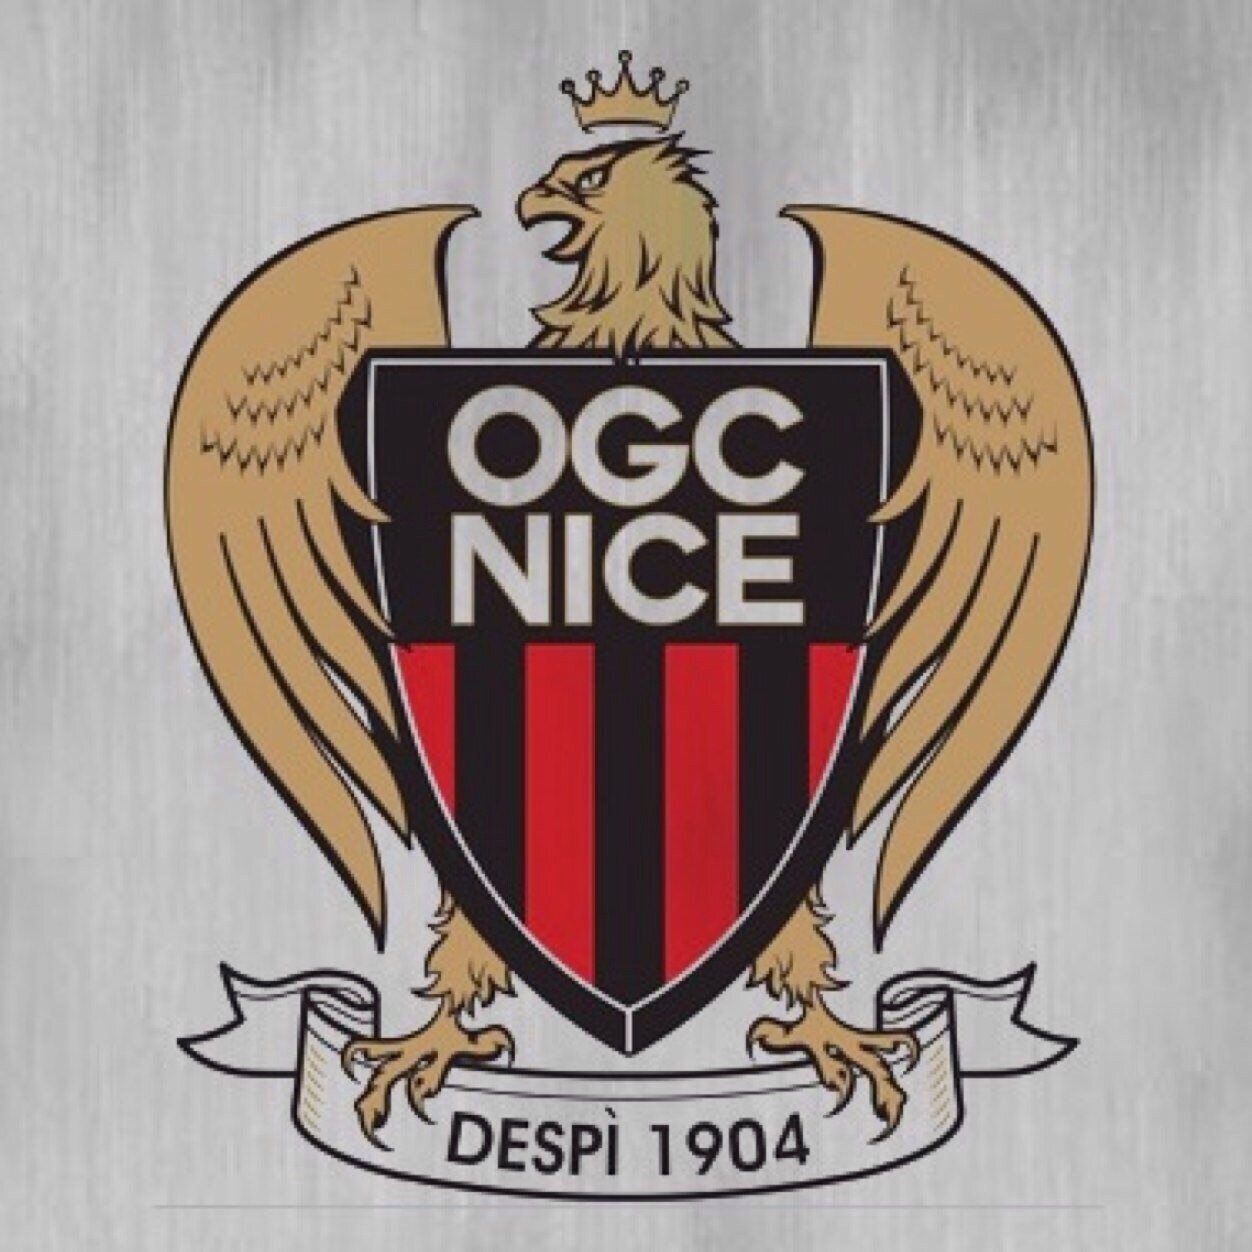 Compte twitter officiel des supporters de l'OGC Nice. Compte diriger par un supporter